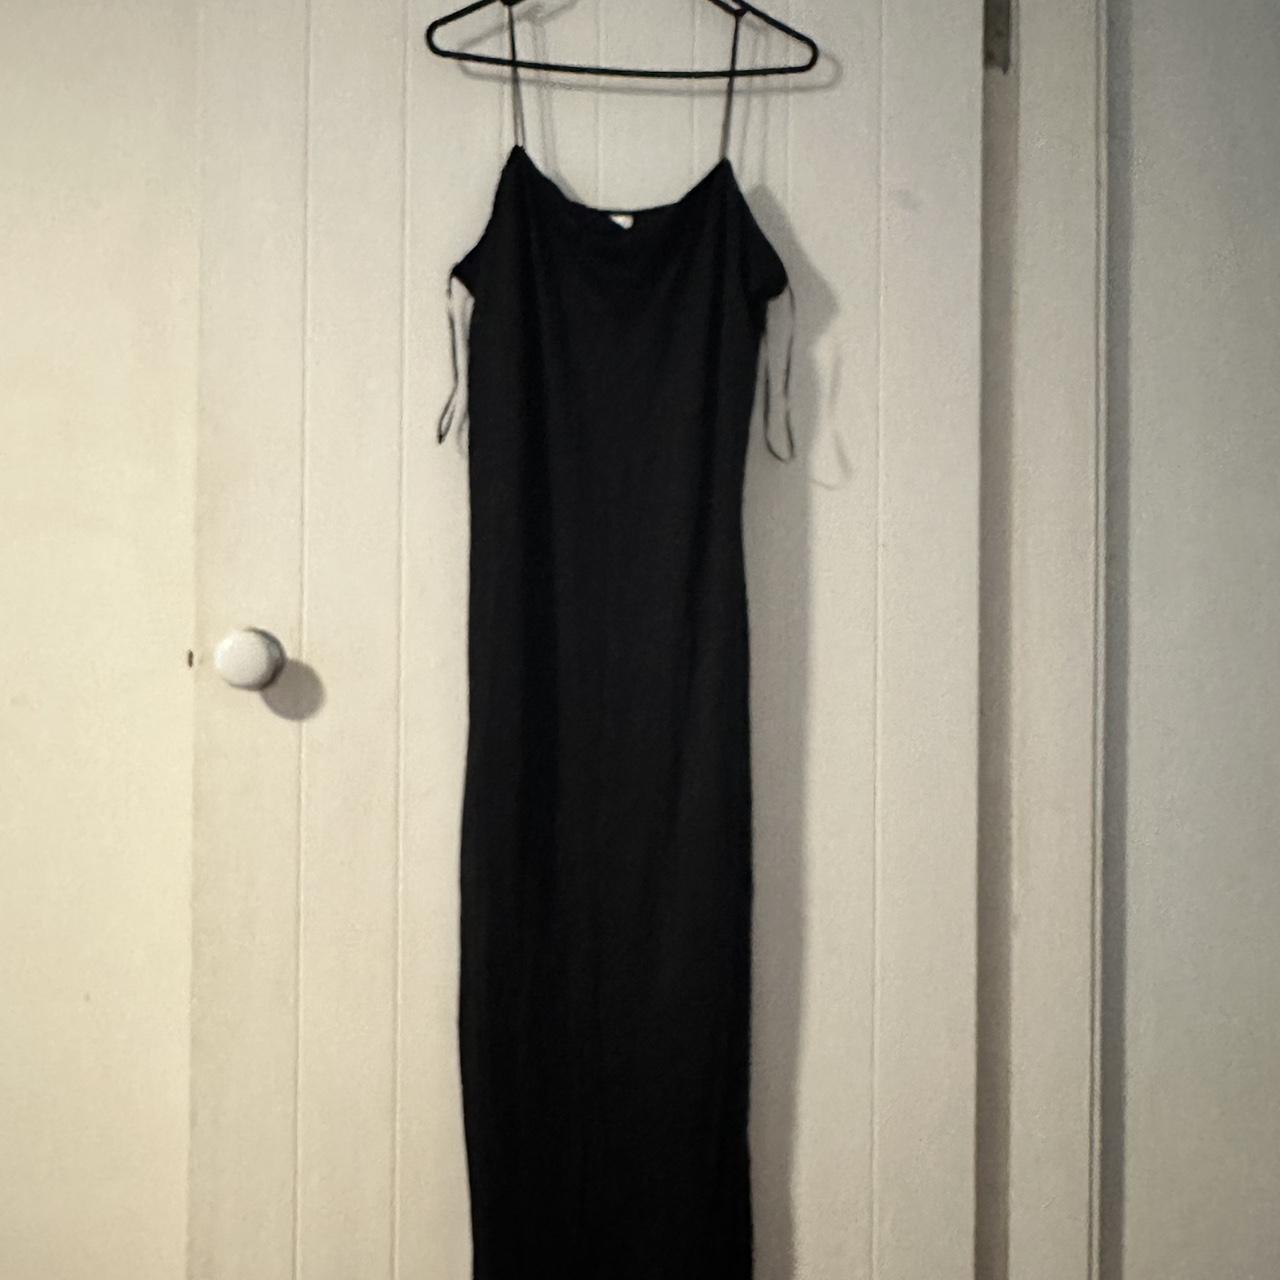 Skims dupe Kmart dress Black size 20 Never worn - Depop